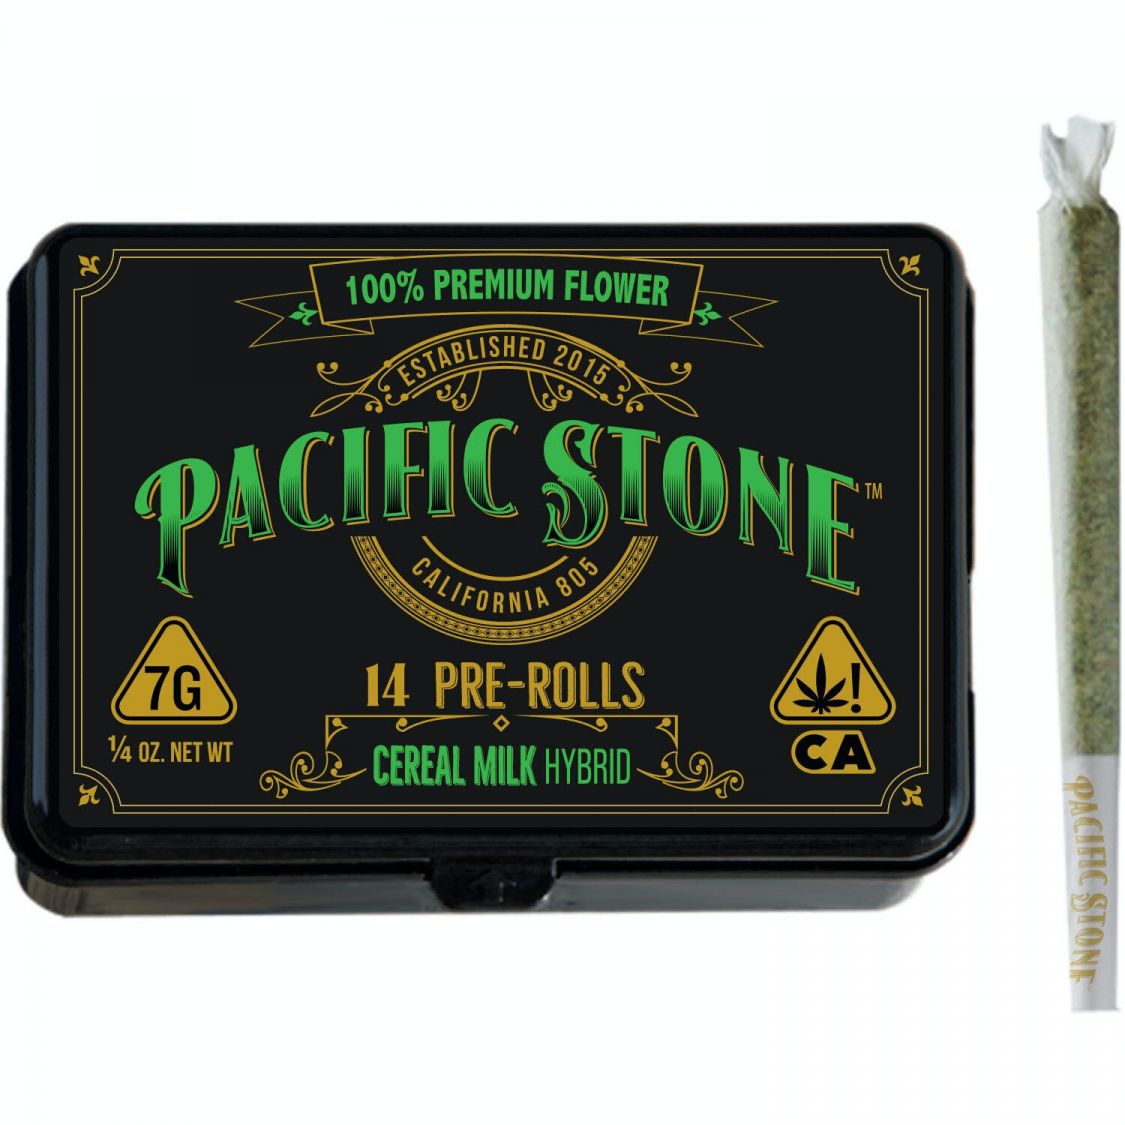 Pacific Stone Cereal Milk 14pk Prerolls Pre-rolls Preroll